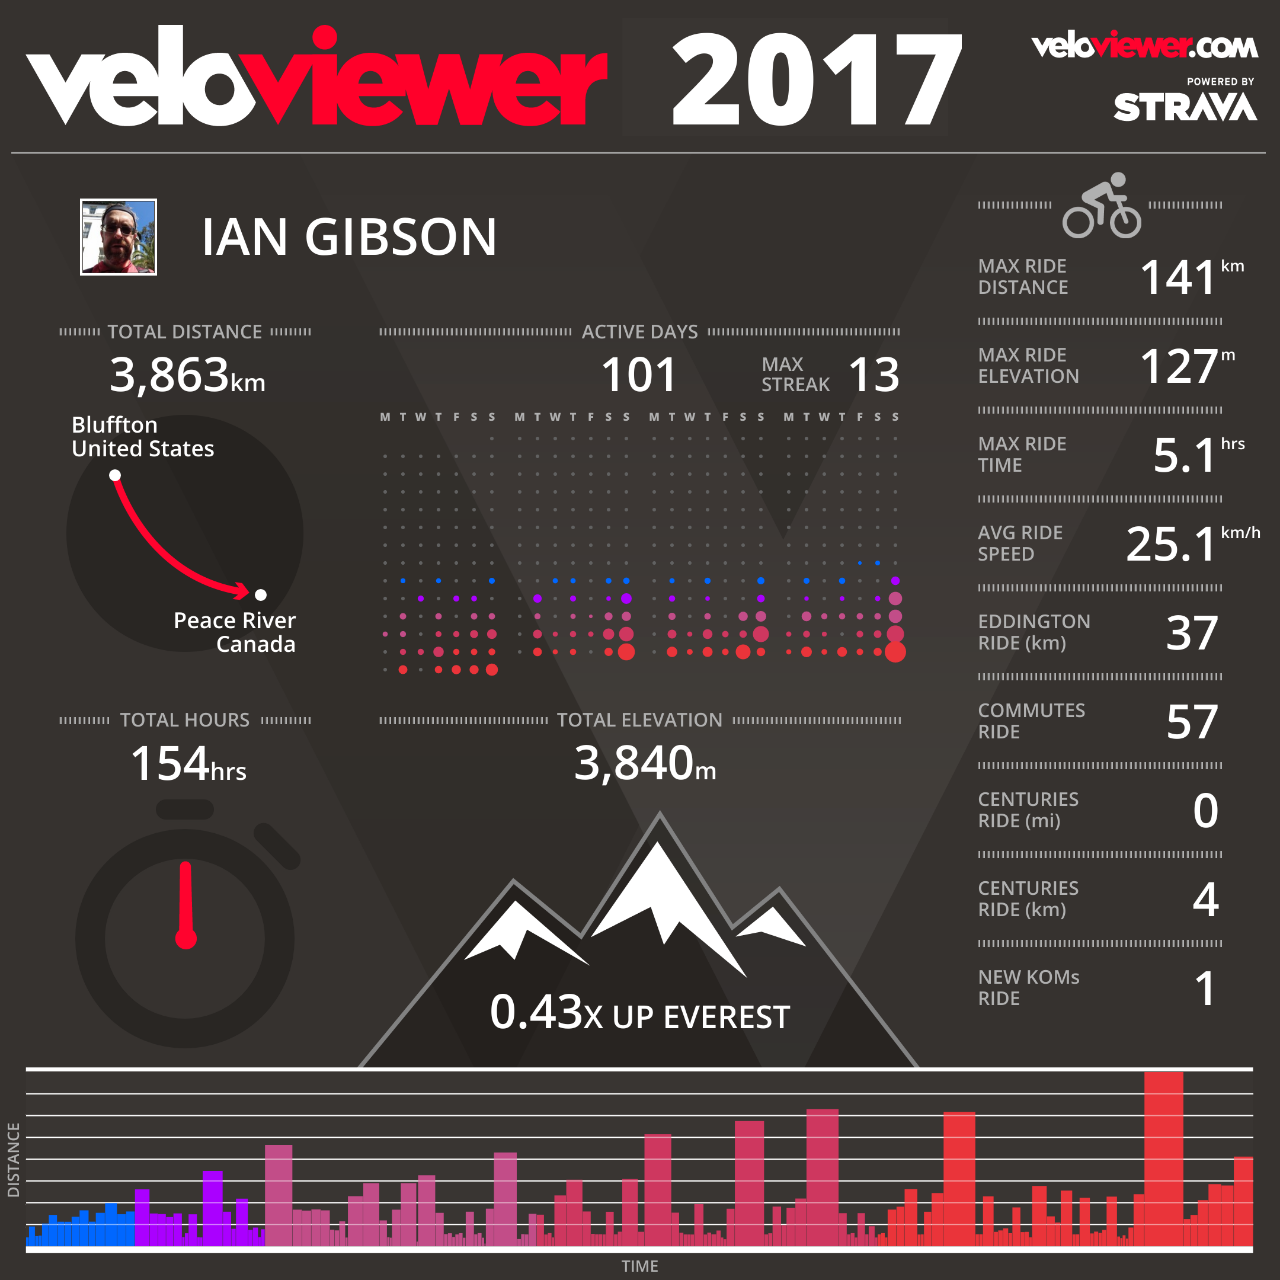 VeloViewer 2017 Summary